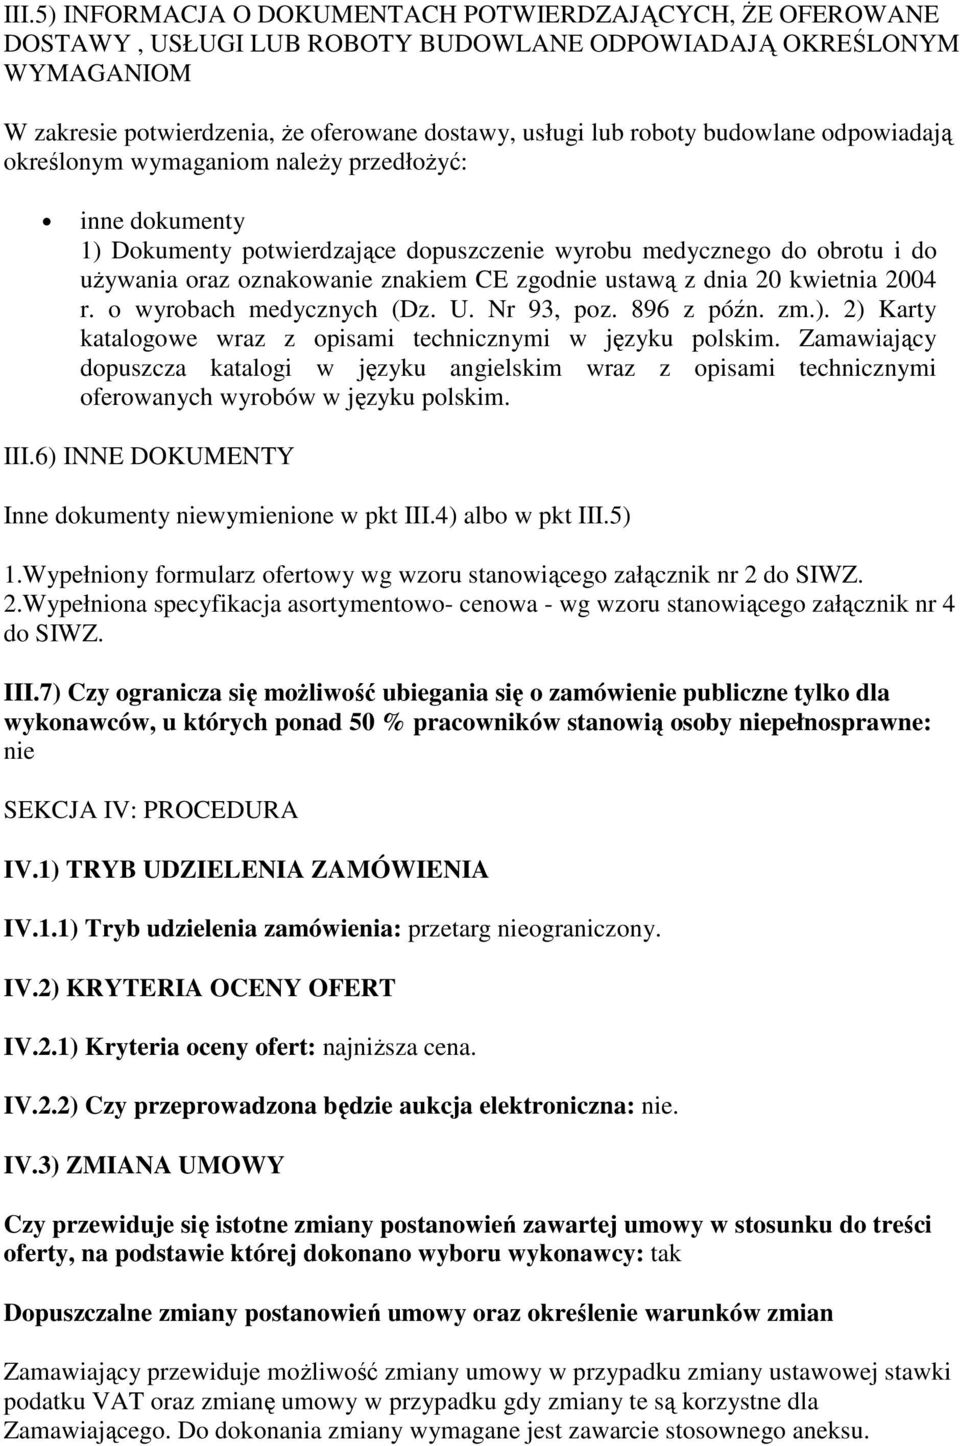 ustawą z dnia 20 kwietnia 2004 r. o wyrobach medycznych (Dz. U. Nr 93, poz. 896 z późn. zm.). 2) Karty katalogowe wraz z opisami technicznymi w języku polskim.